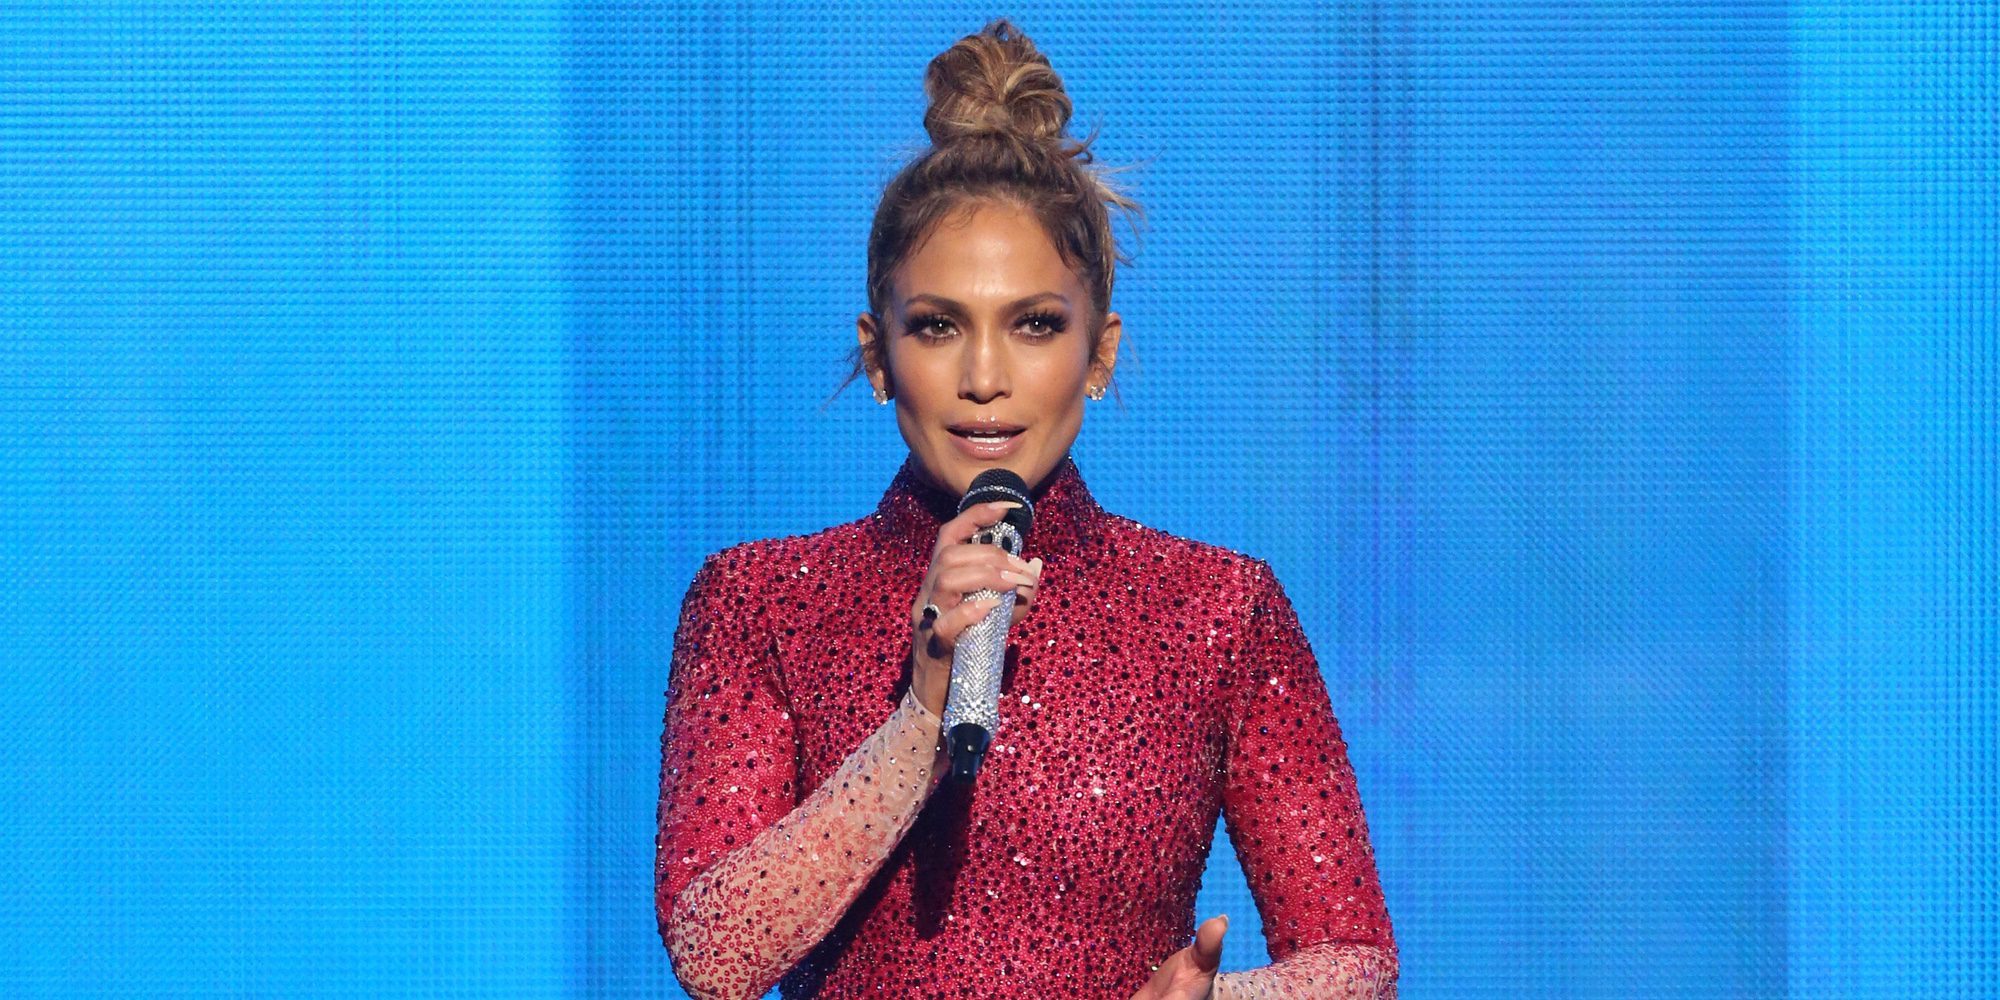 Difícil decisión para Jennifer Lopez: ¿Harry Styles, Zac Efron, el Príncipe Harry o Bradley Cooper?